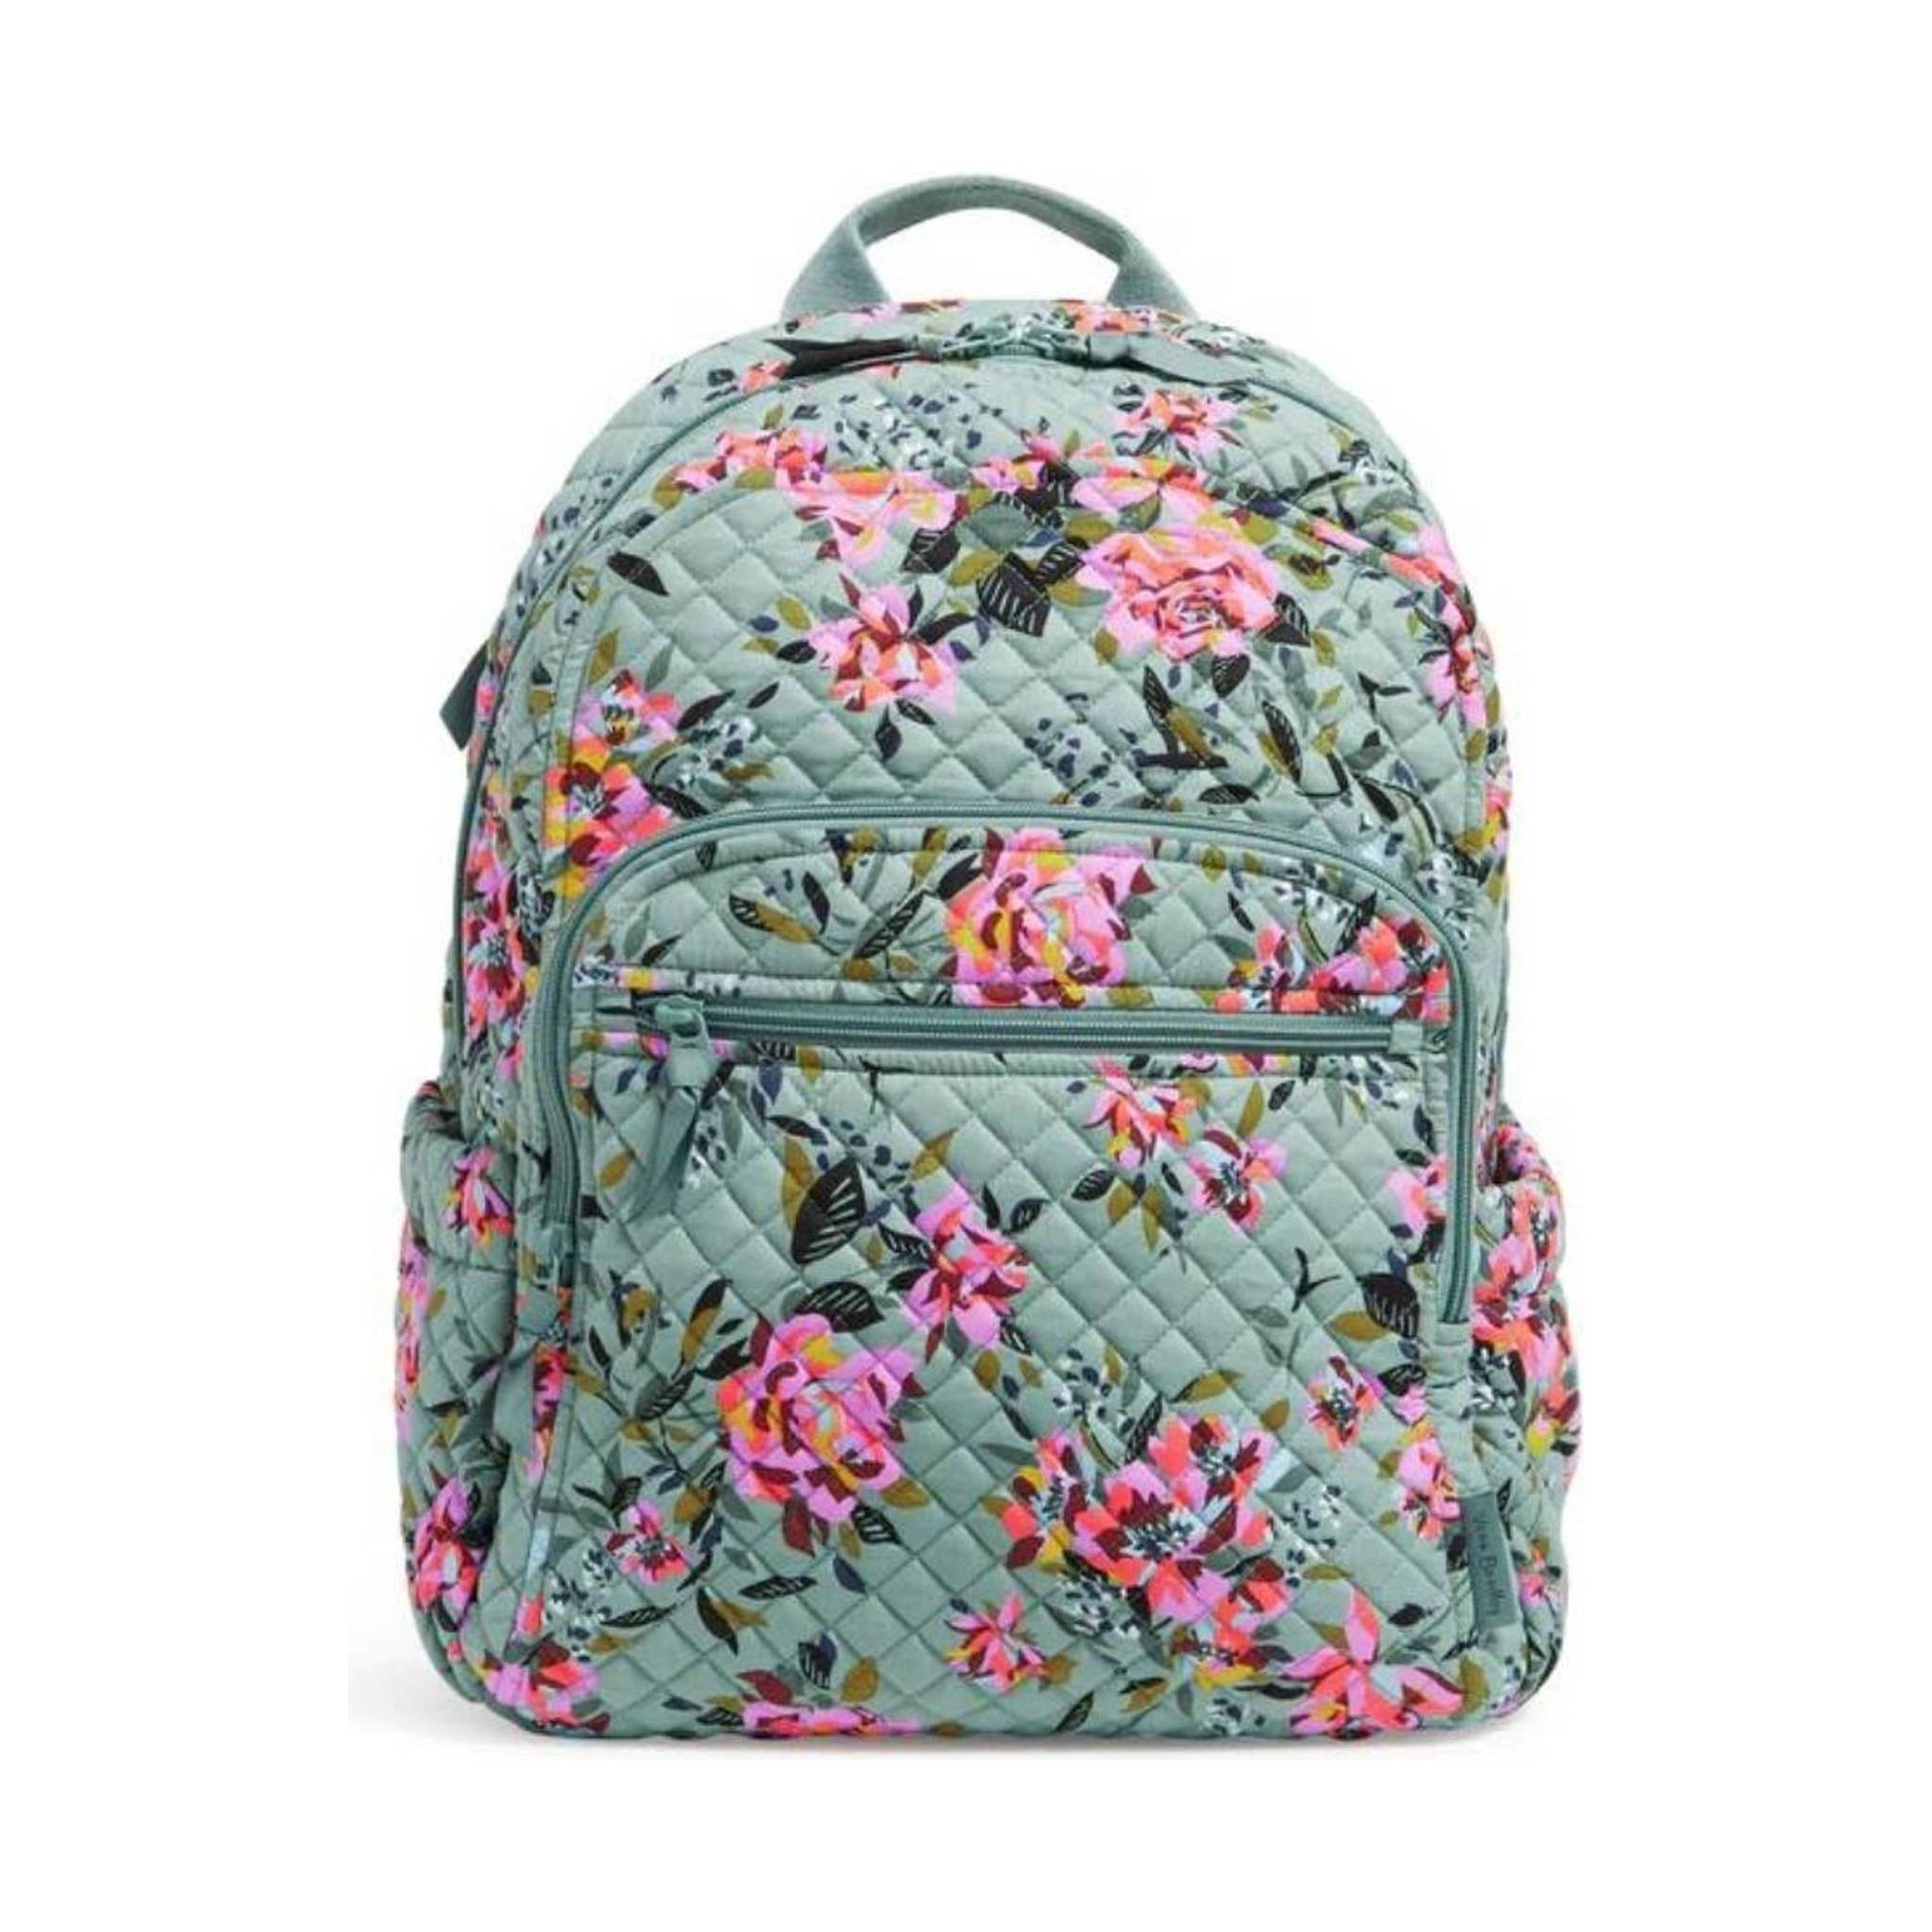 Vera Bradley Backpack Baby Bag In Lola Pattern – Pink